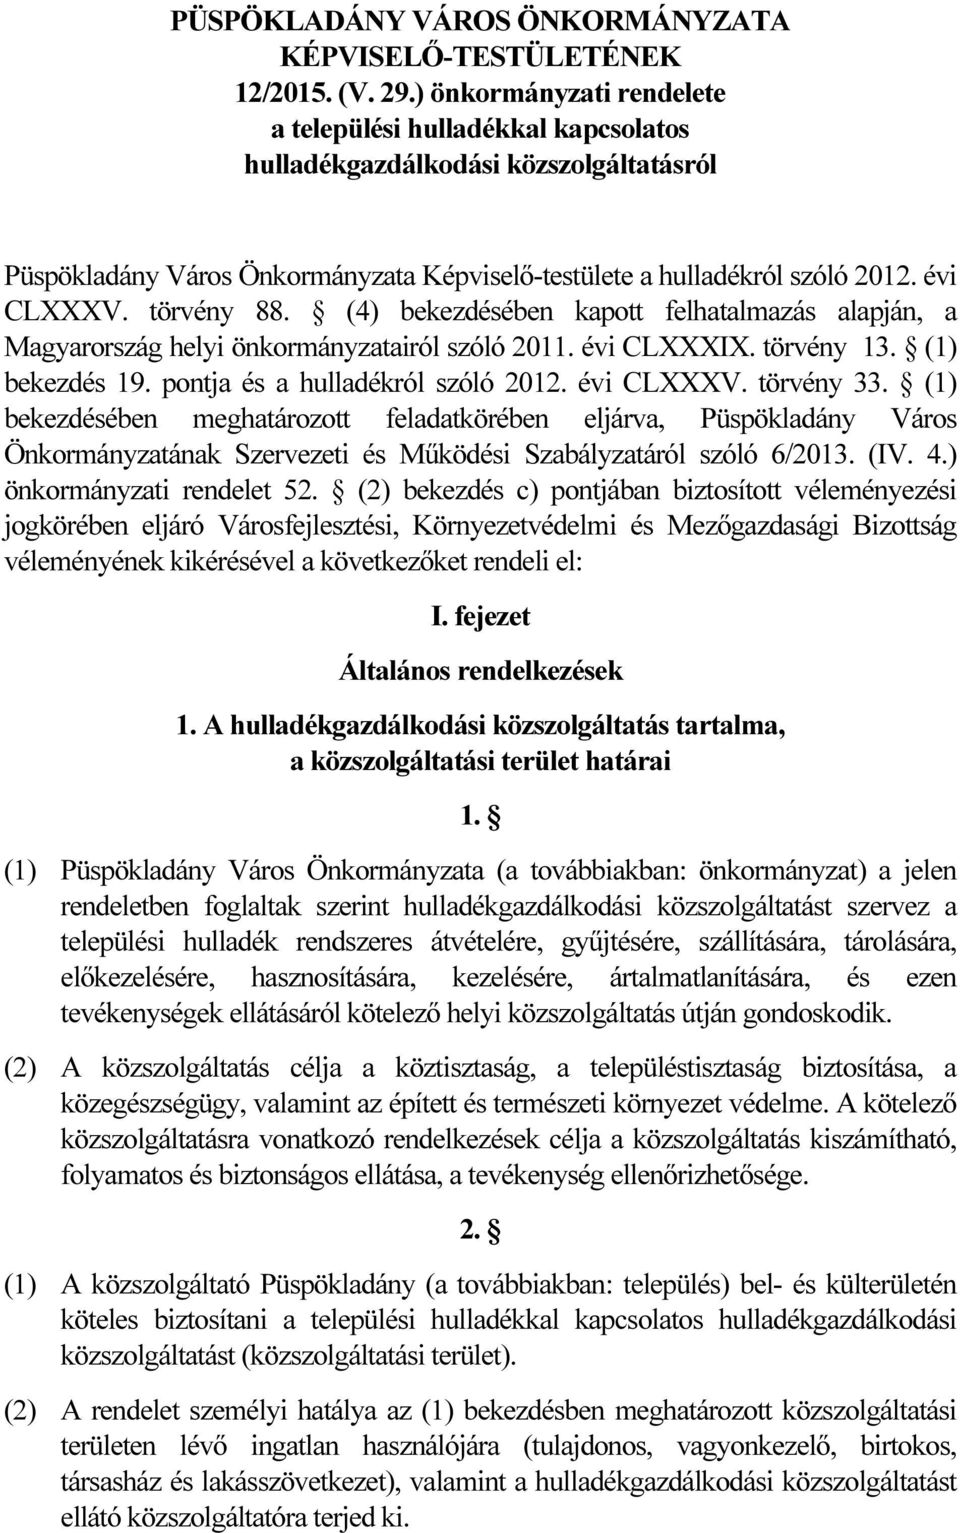 törvény 88. (4) bekezdésében kapott felhatalmazás alapján, a Magyarország helyi önkormányzatairól szóló 2011. évi CLXXXIX. törvény 13. (1) bekezdés 19. pontja és a hulladékról szóló 2012. évi CLXXXV.